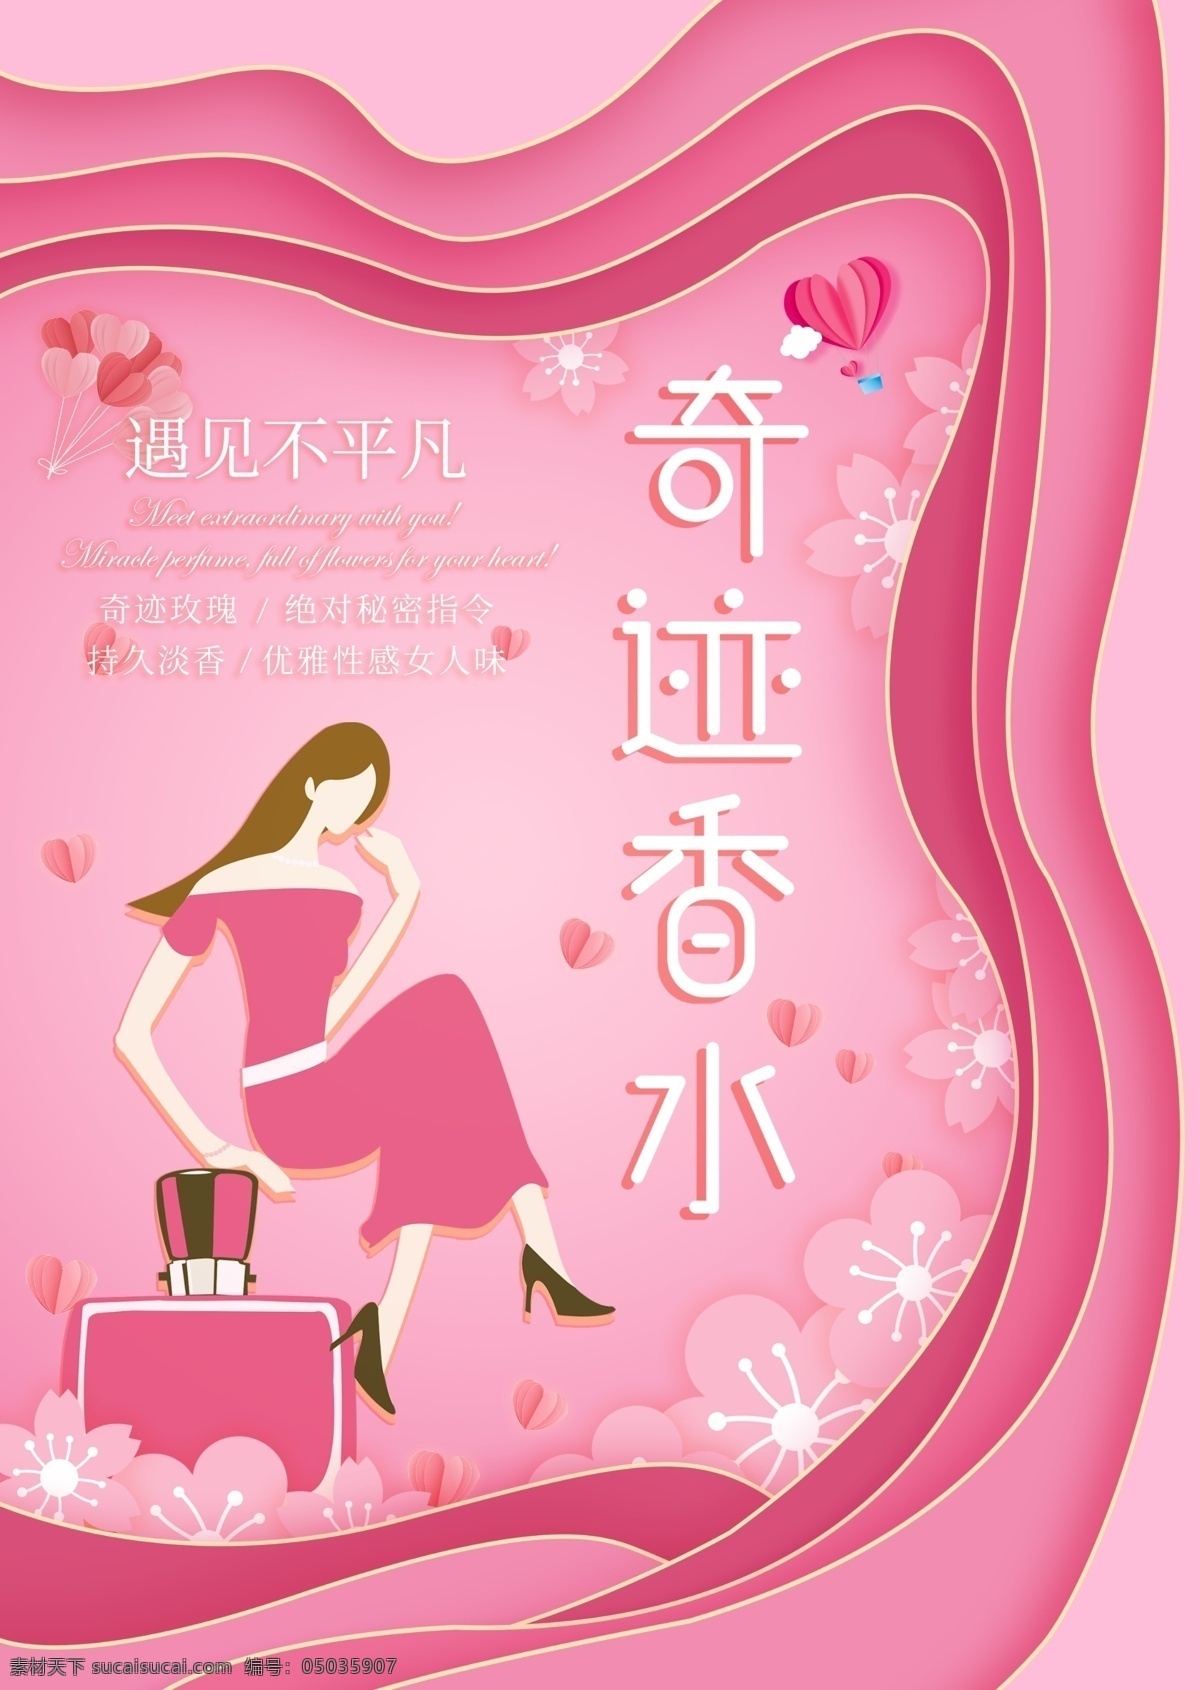 香水 剪纸 风格 海报 粉红 剪纸风 创意 简约 精致 少女 化妆品